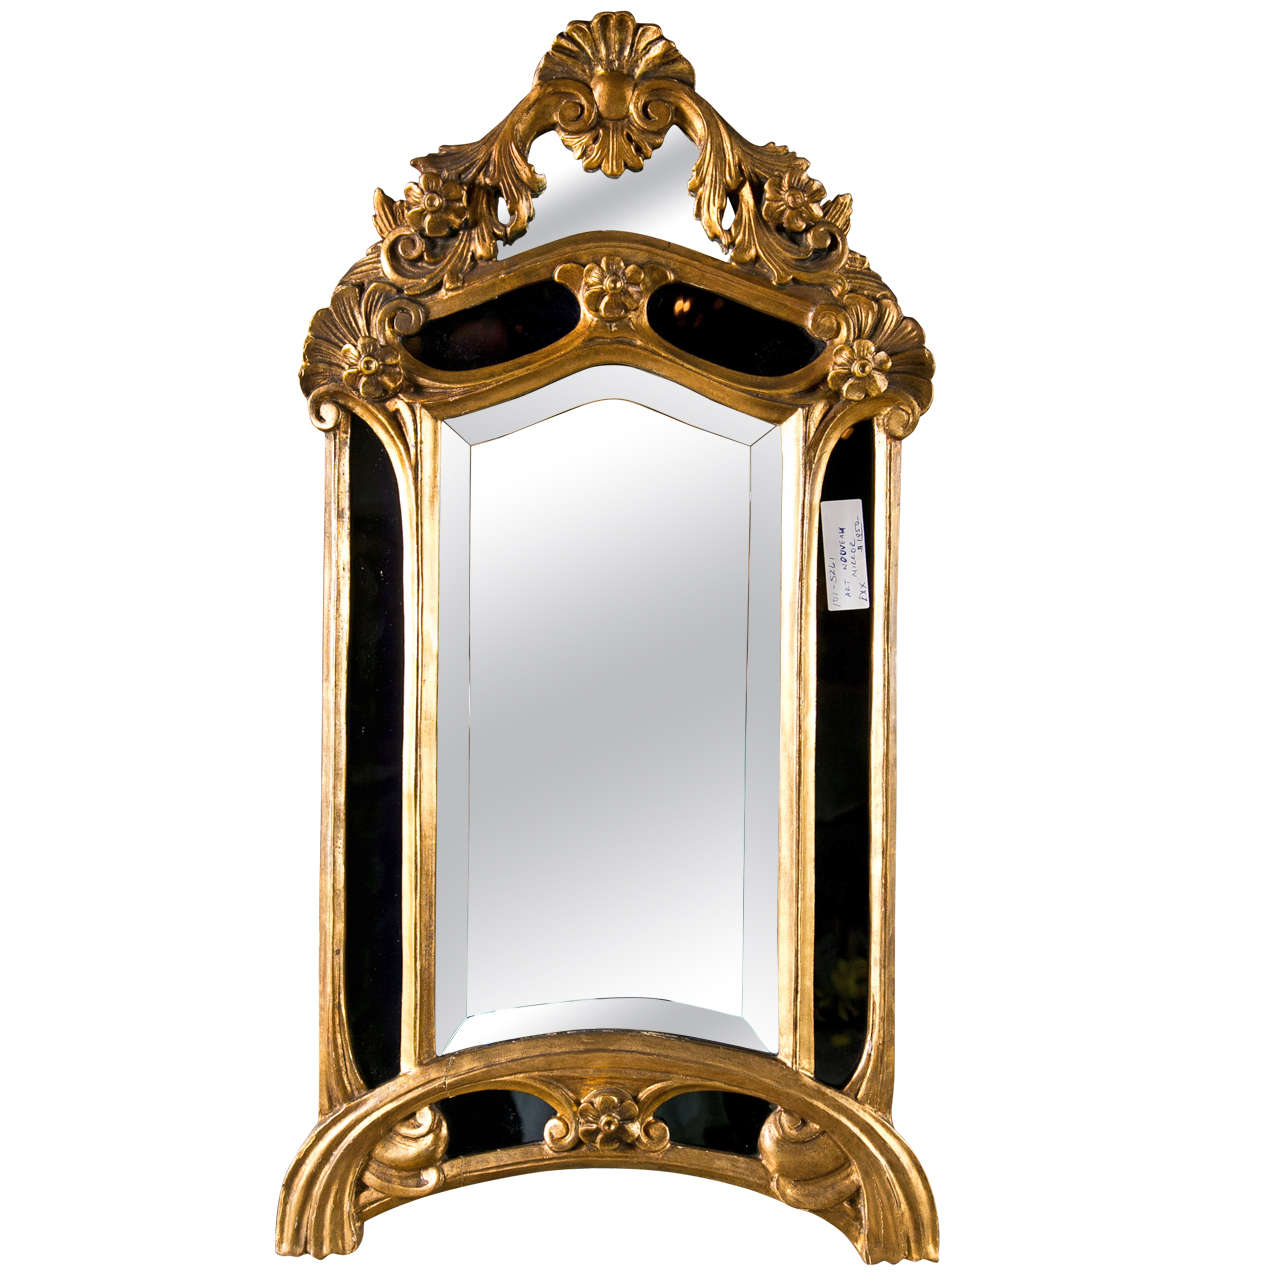 Art Nouveau Style Giltwood Mirror by Maison Jansen